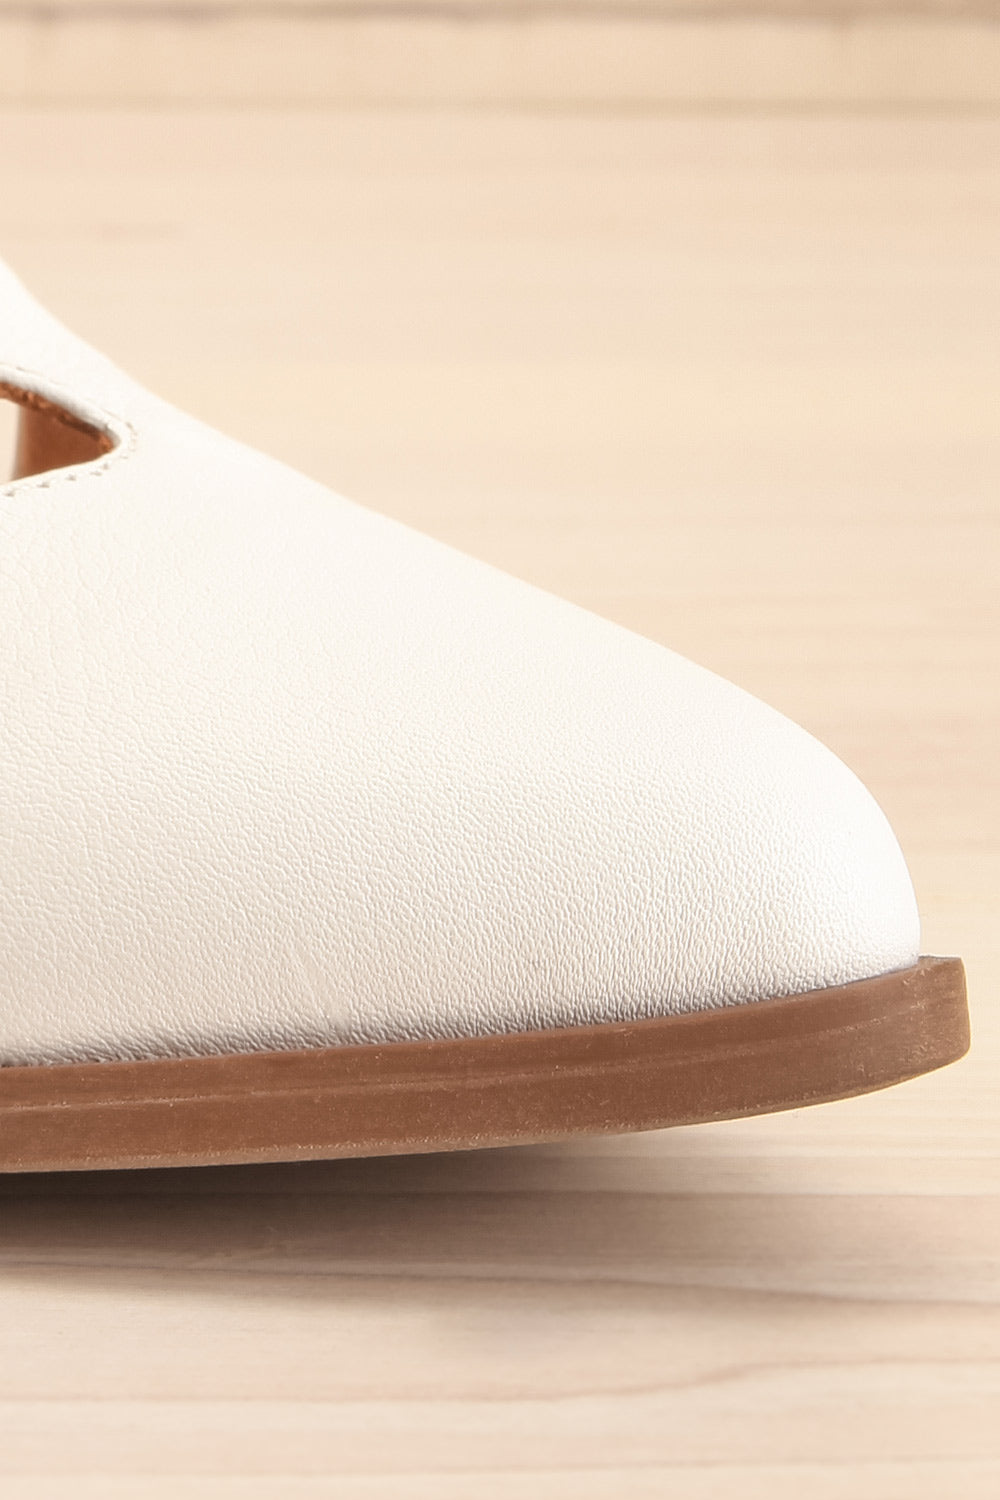 Bruca White Pointed Toe Asymmetrical Flats | La petite garçonne front close-up